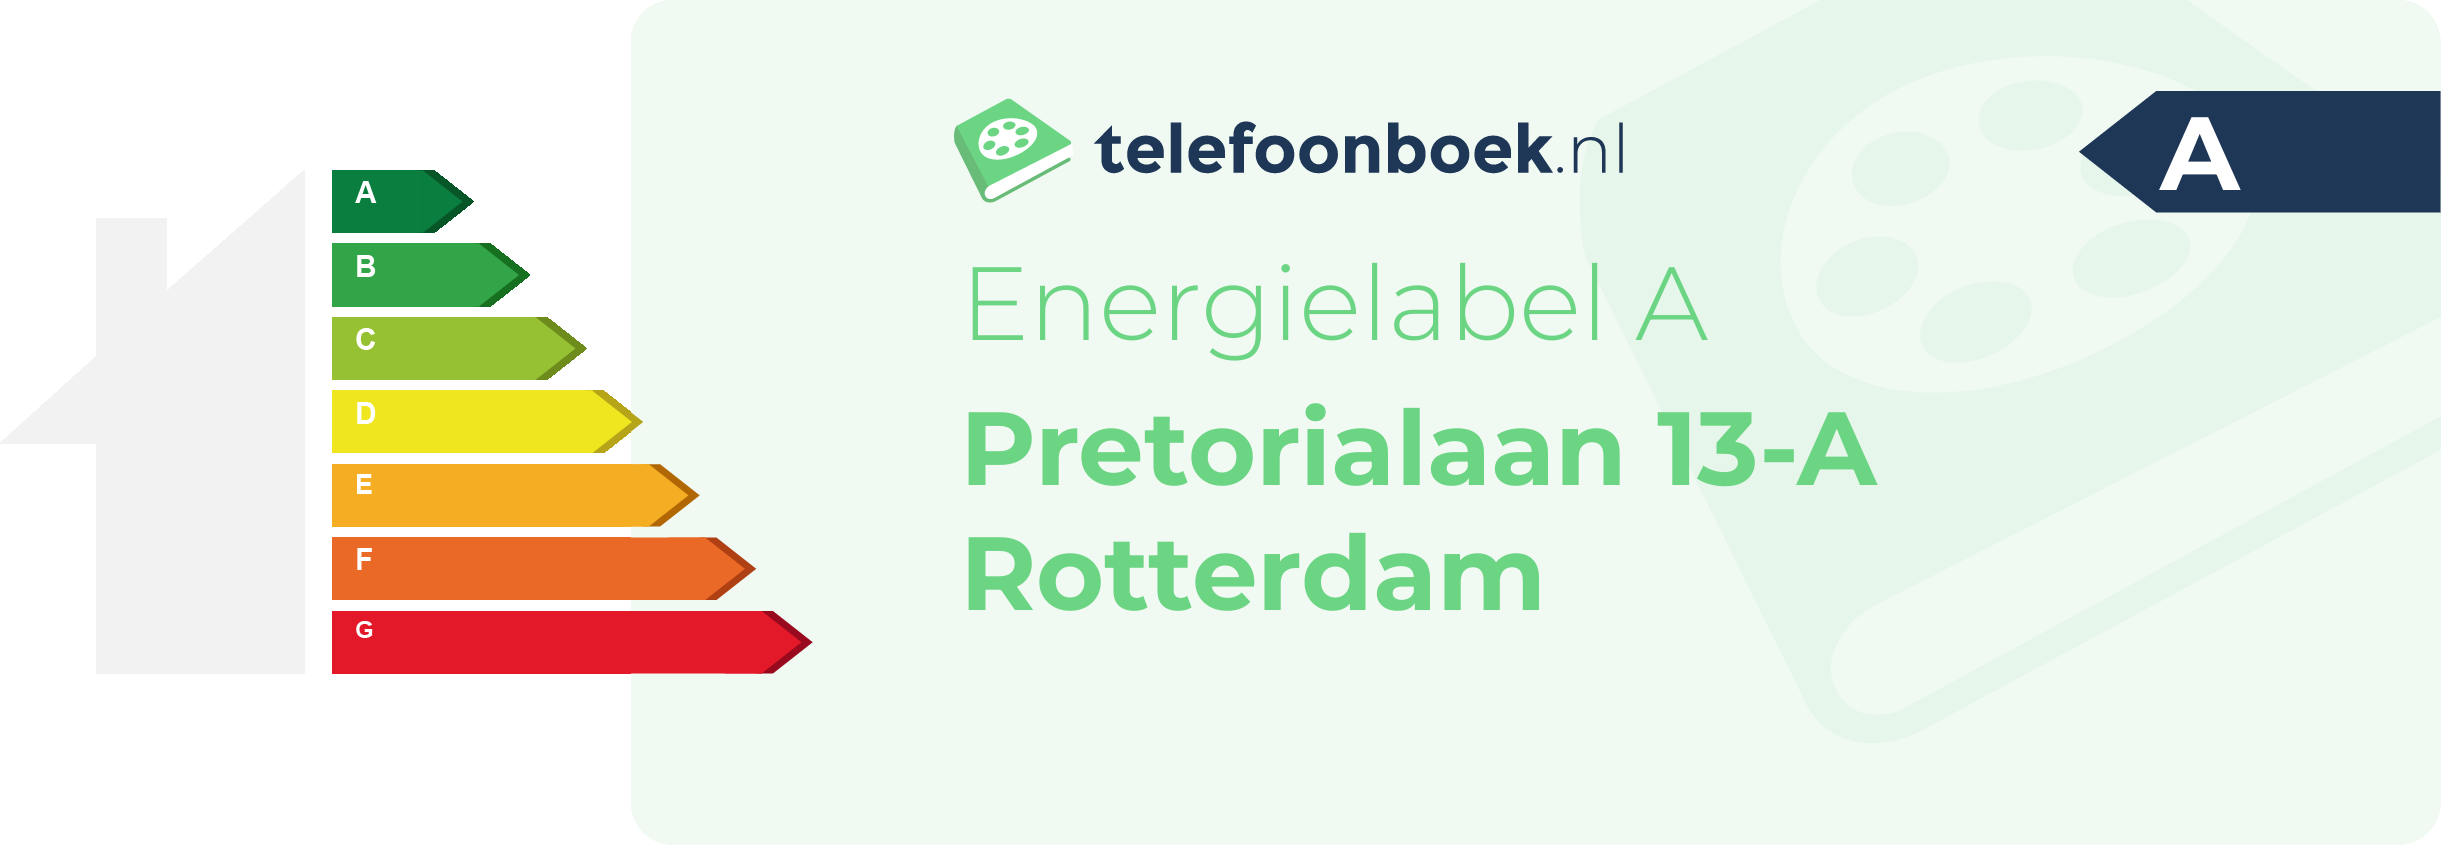 Energielabel Pretorialaan 13-A Rotterdam